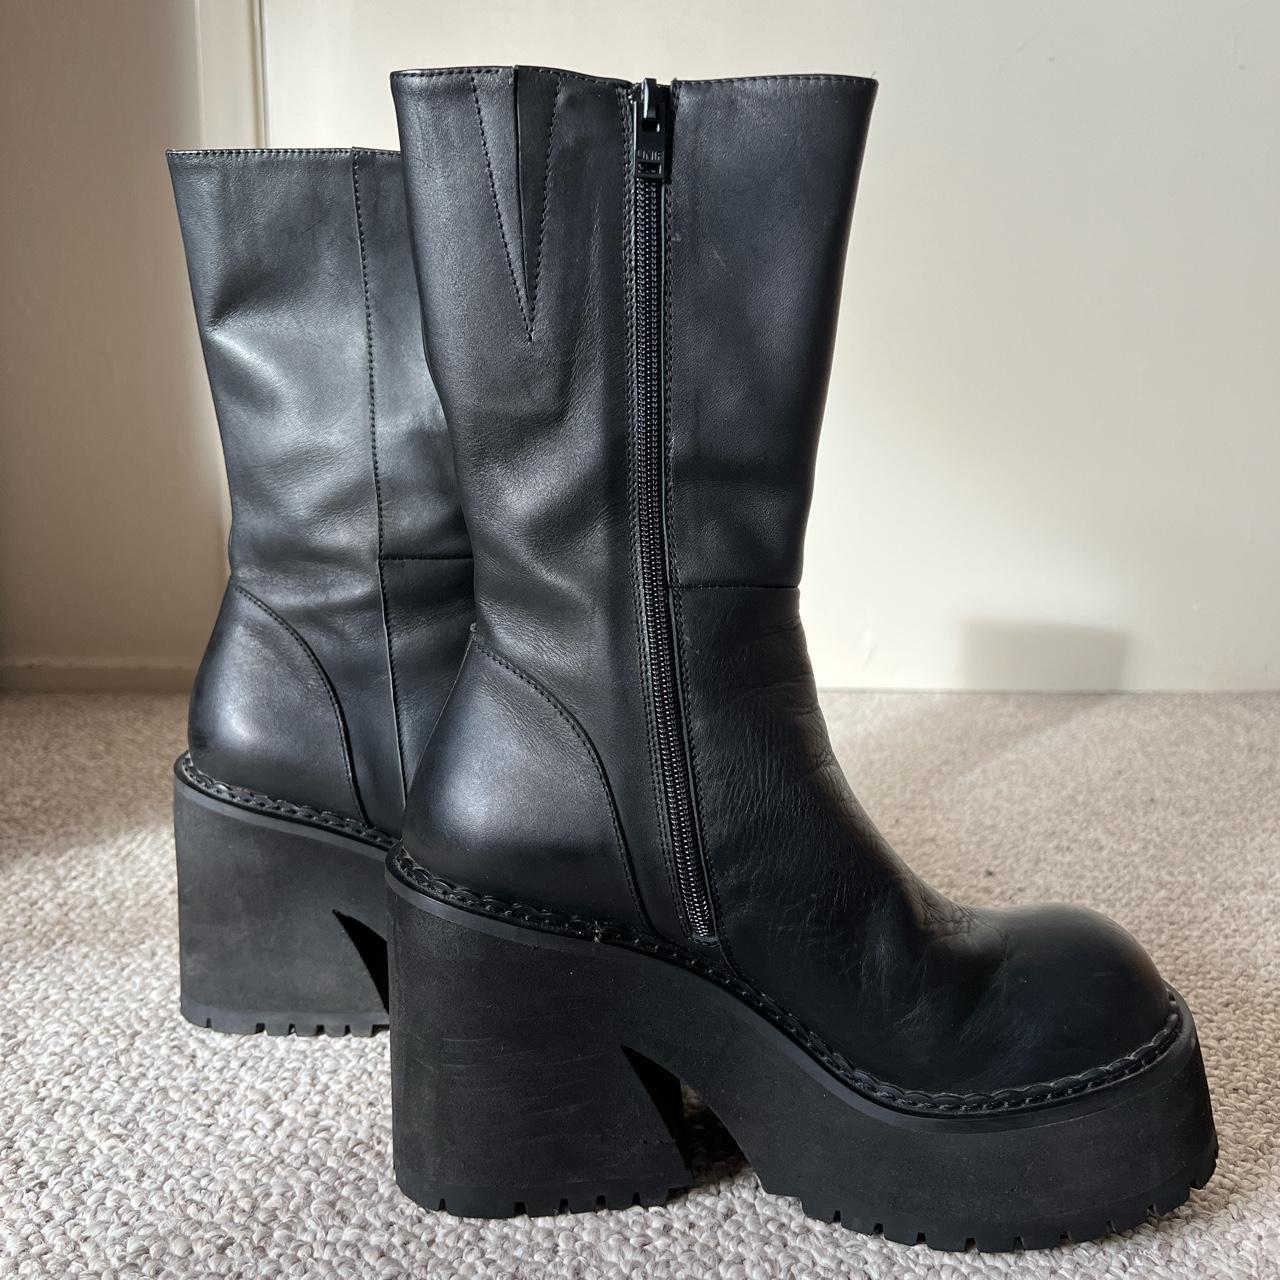 Unif 100% leather black platform ankle Parker Boots... - Depop